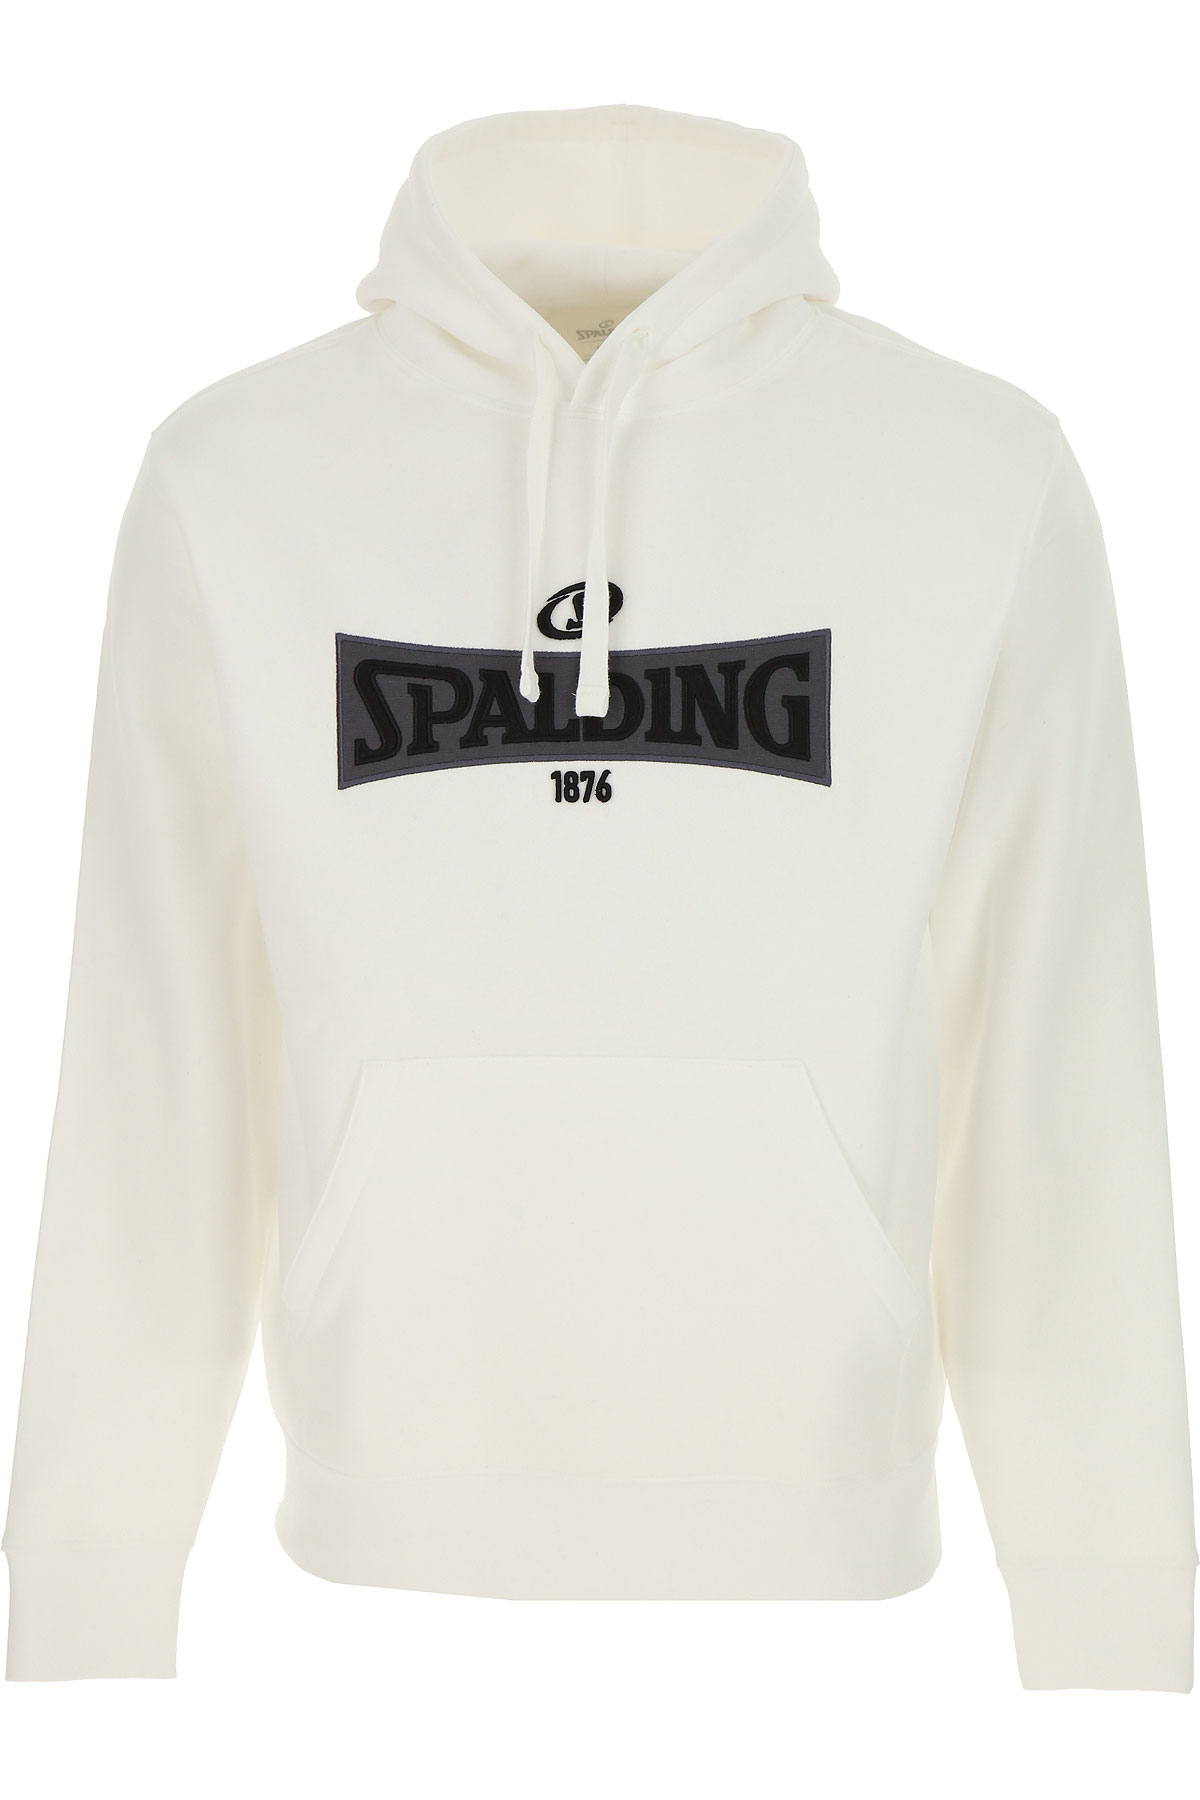 Spalding Sweatshirt für Herren, Kapuzenpulli, Hoodie, Sweats Günstig im Sale, Weiss, Baumwolle, 2017, L M XL XXL